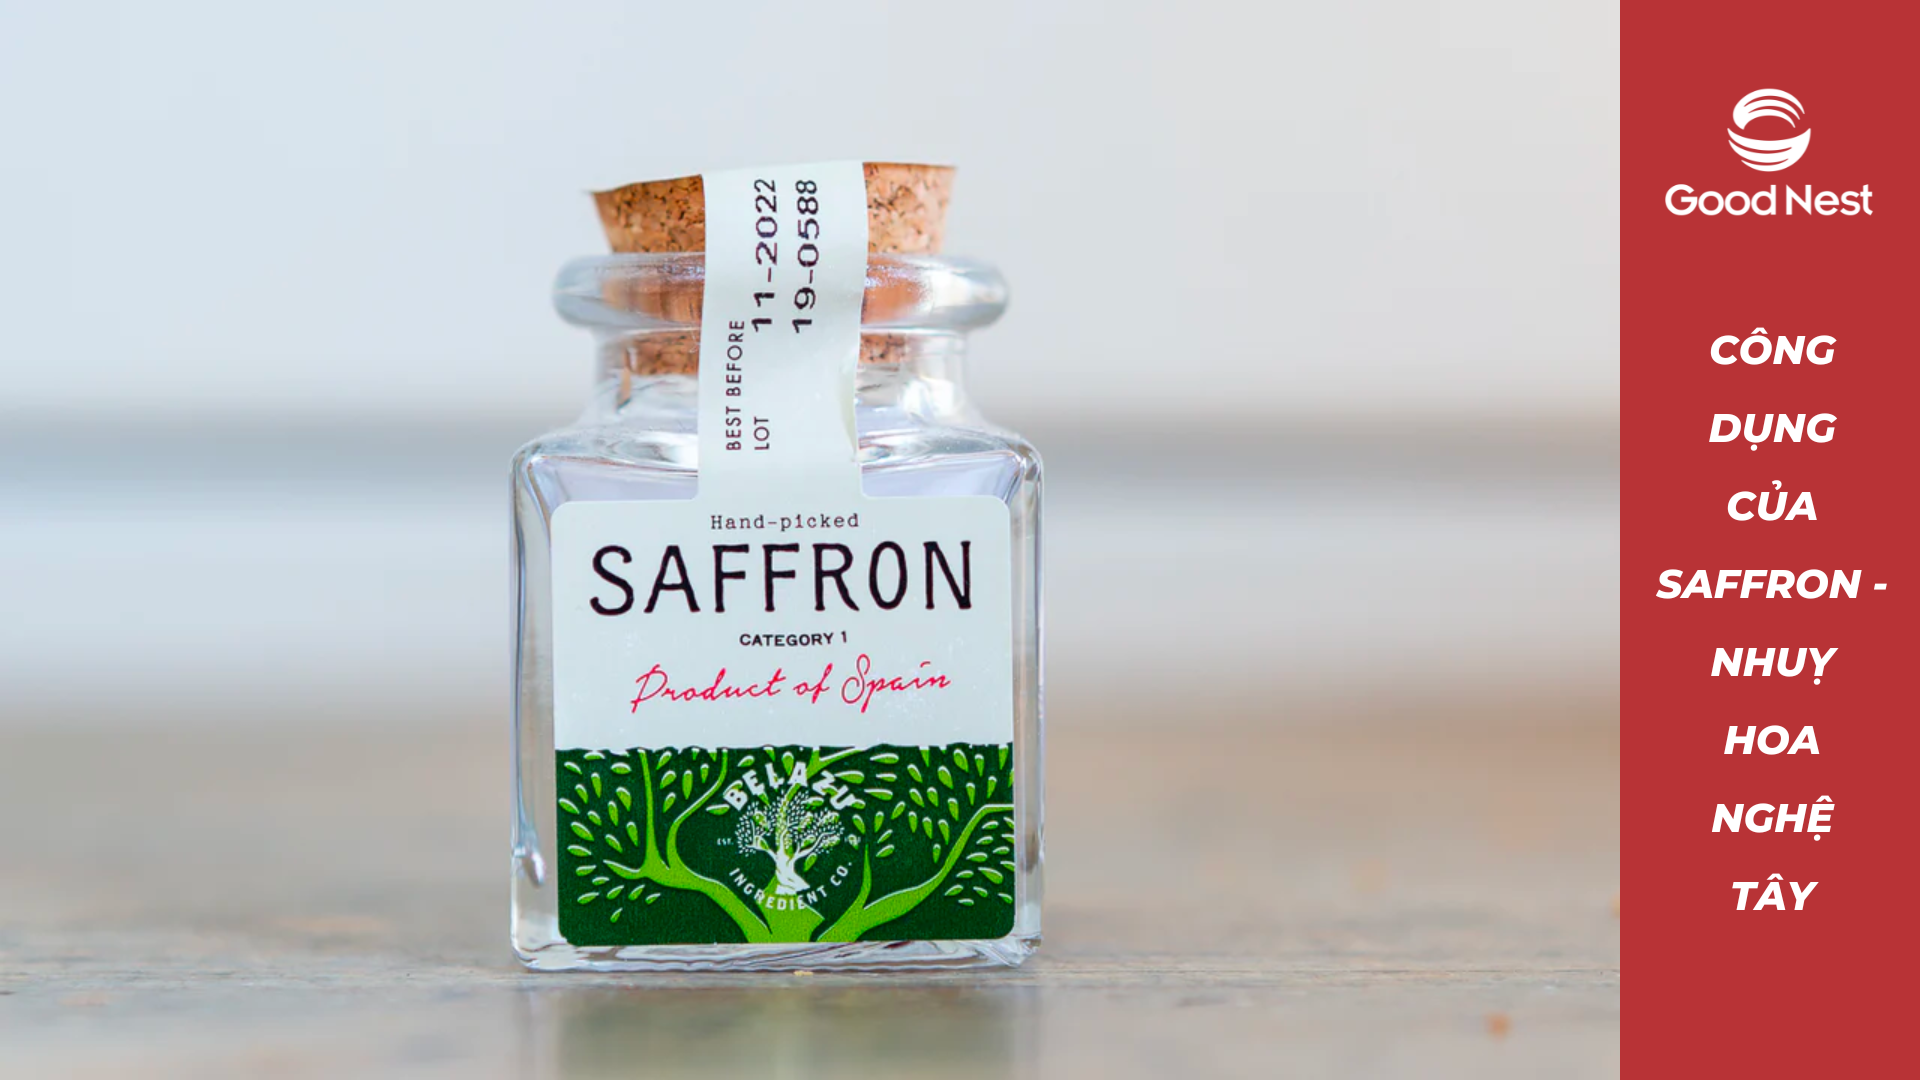 Công dụng của Saffron - Nhuỵ Hoa Nghệ Tây đối với sức khoẻ là gì?